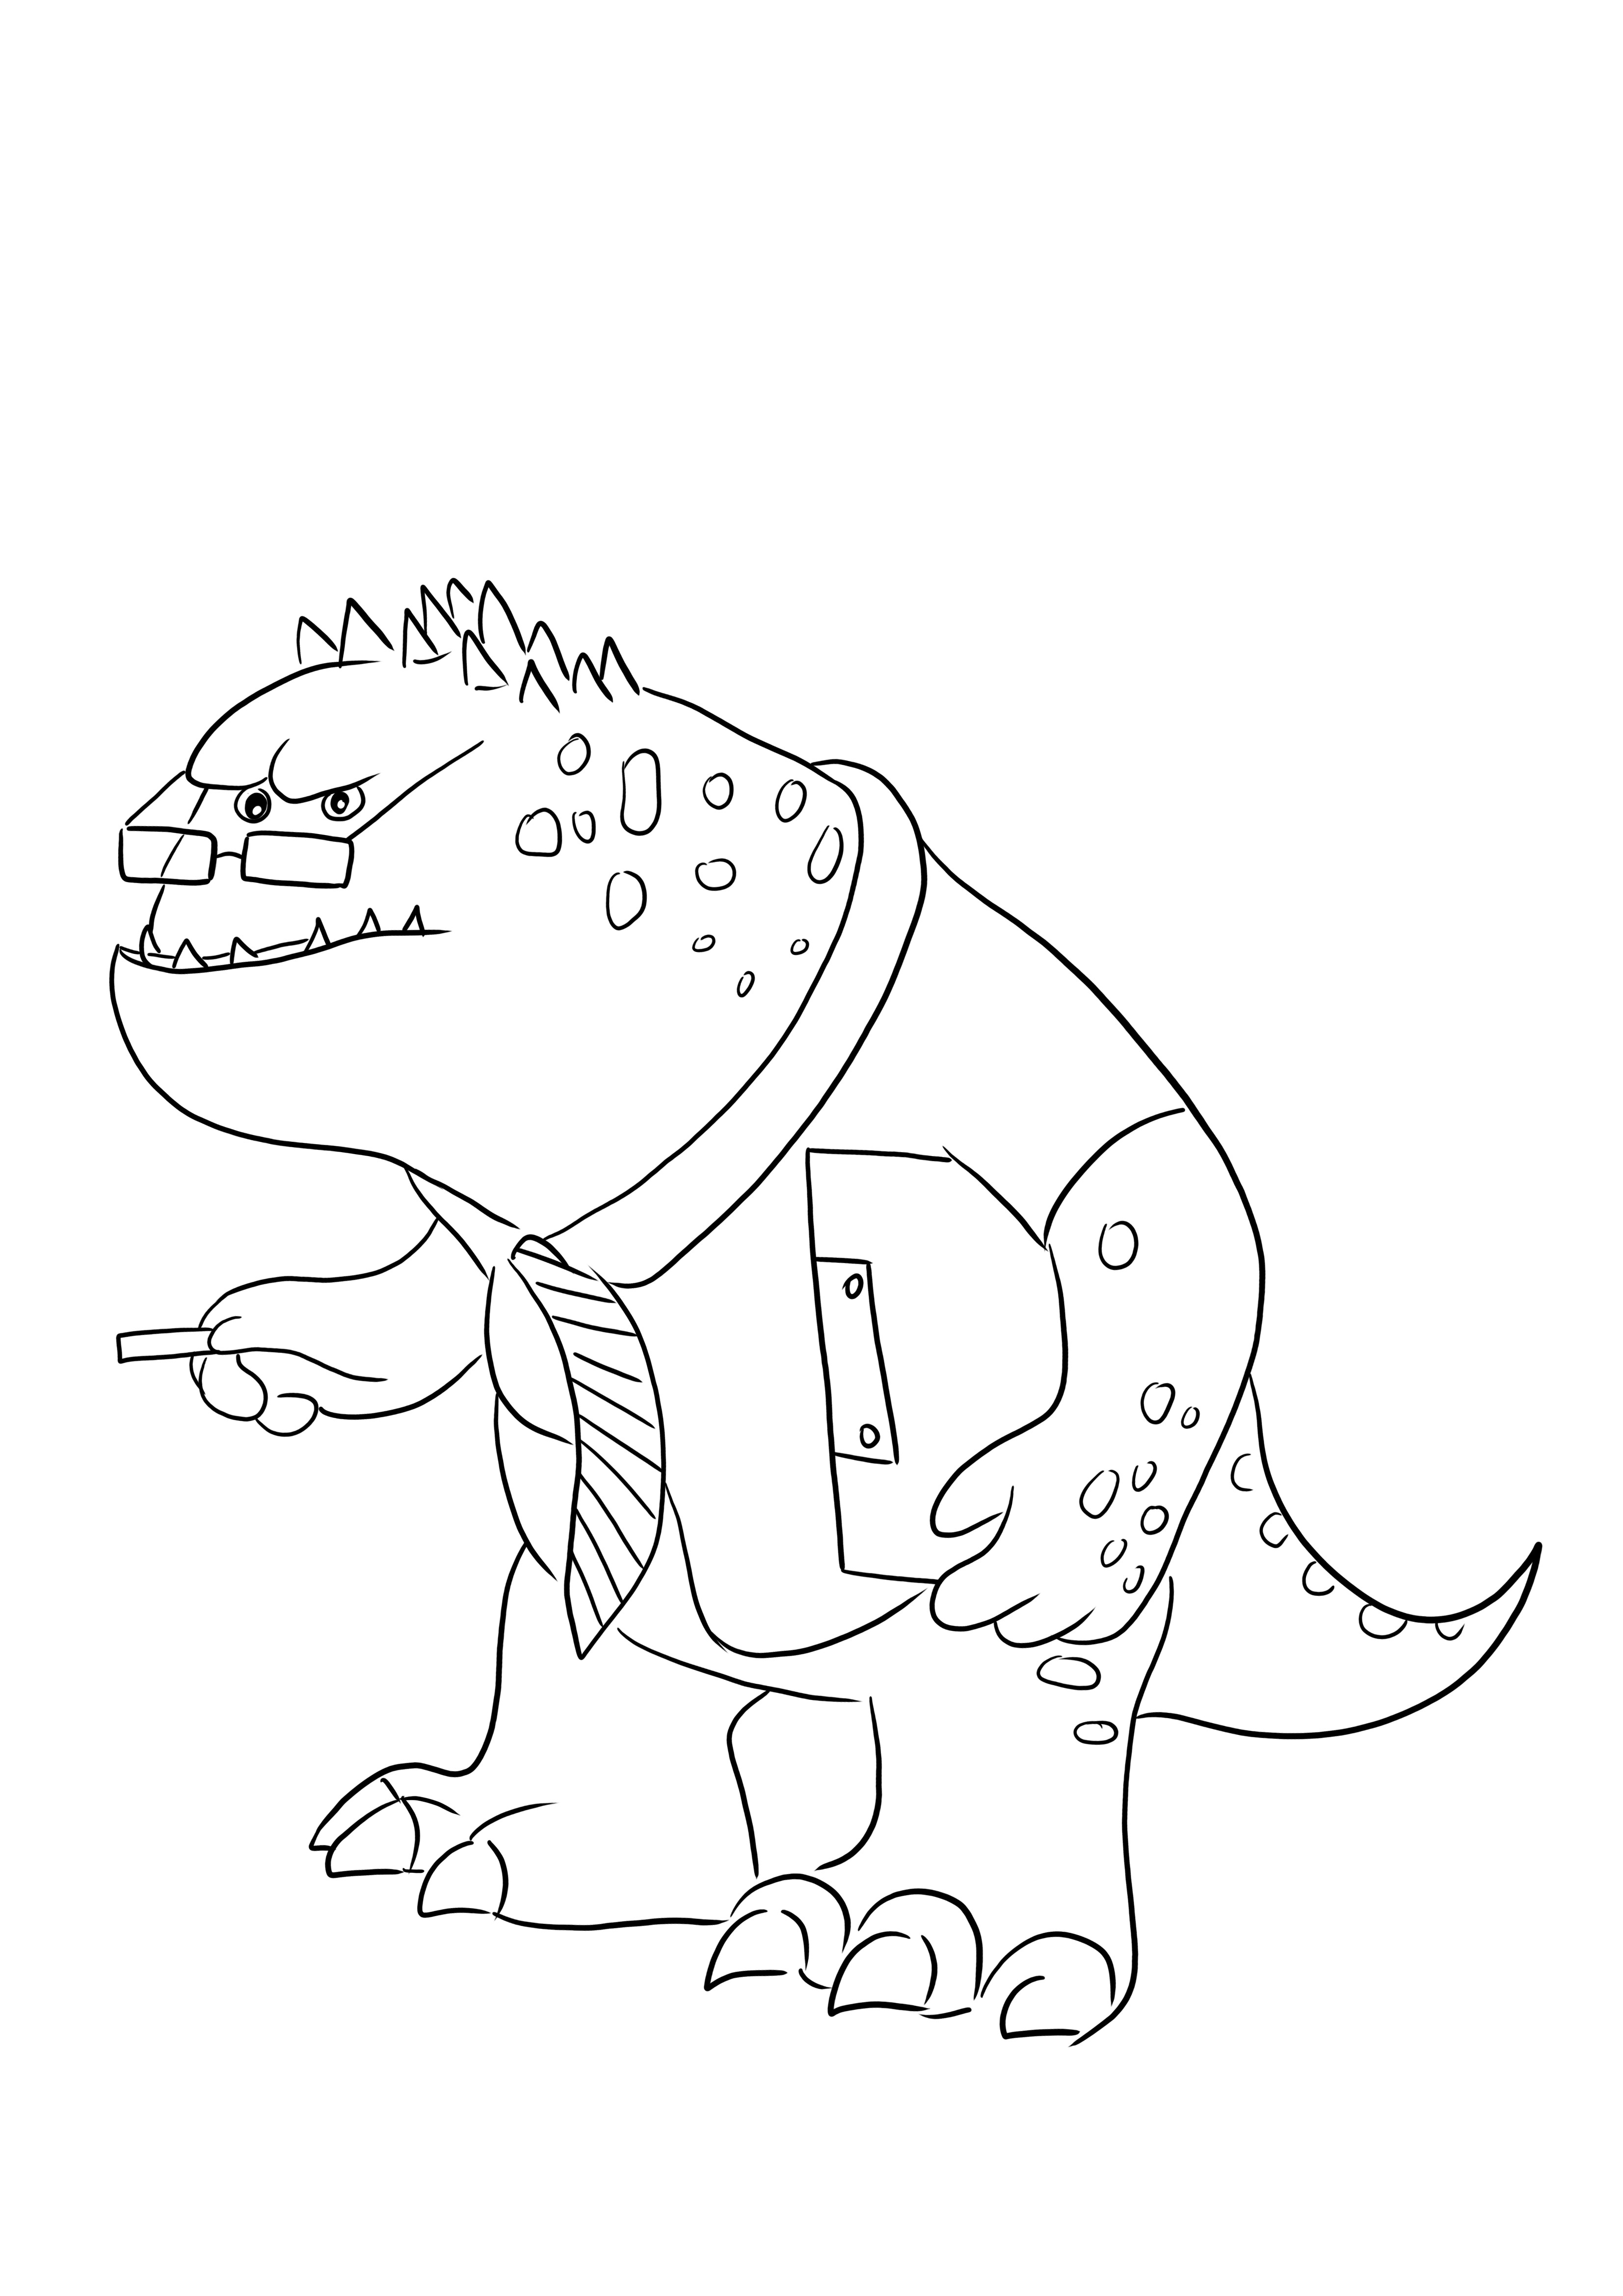 Strict Professor Knight-un'immagine da colorare con un personaggio divertente di Monsters Inc da scaricare gratuitamente